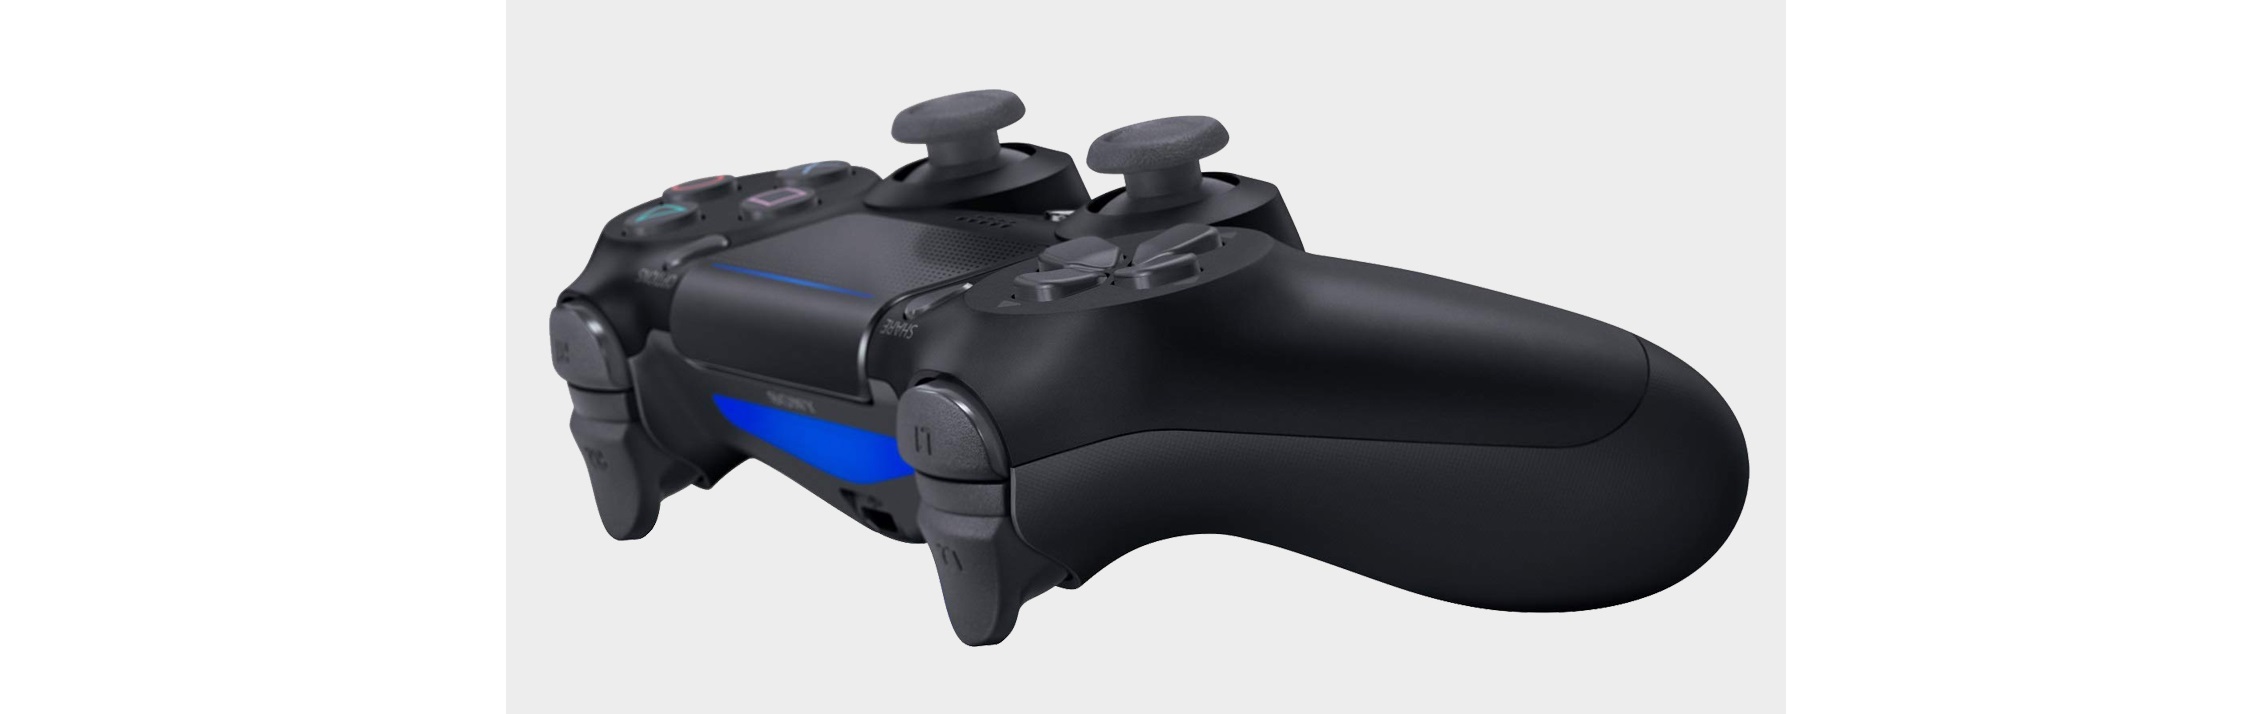 Tay cầm chơi game không dây PS4 Sony DUALSHOCK 4 Controller Steel Black CUH-ZCT2G21 có thiết kế analog và trigger tinh chỉnh